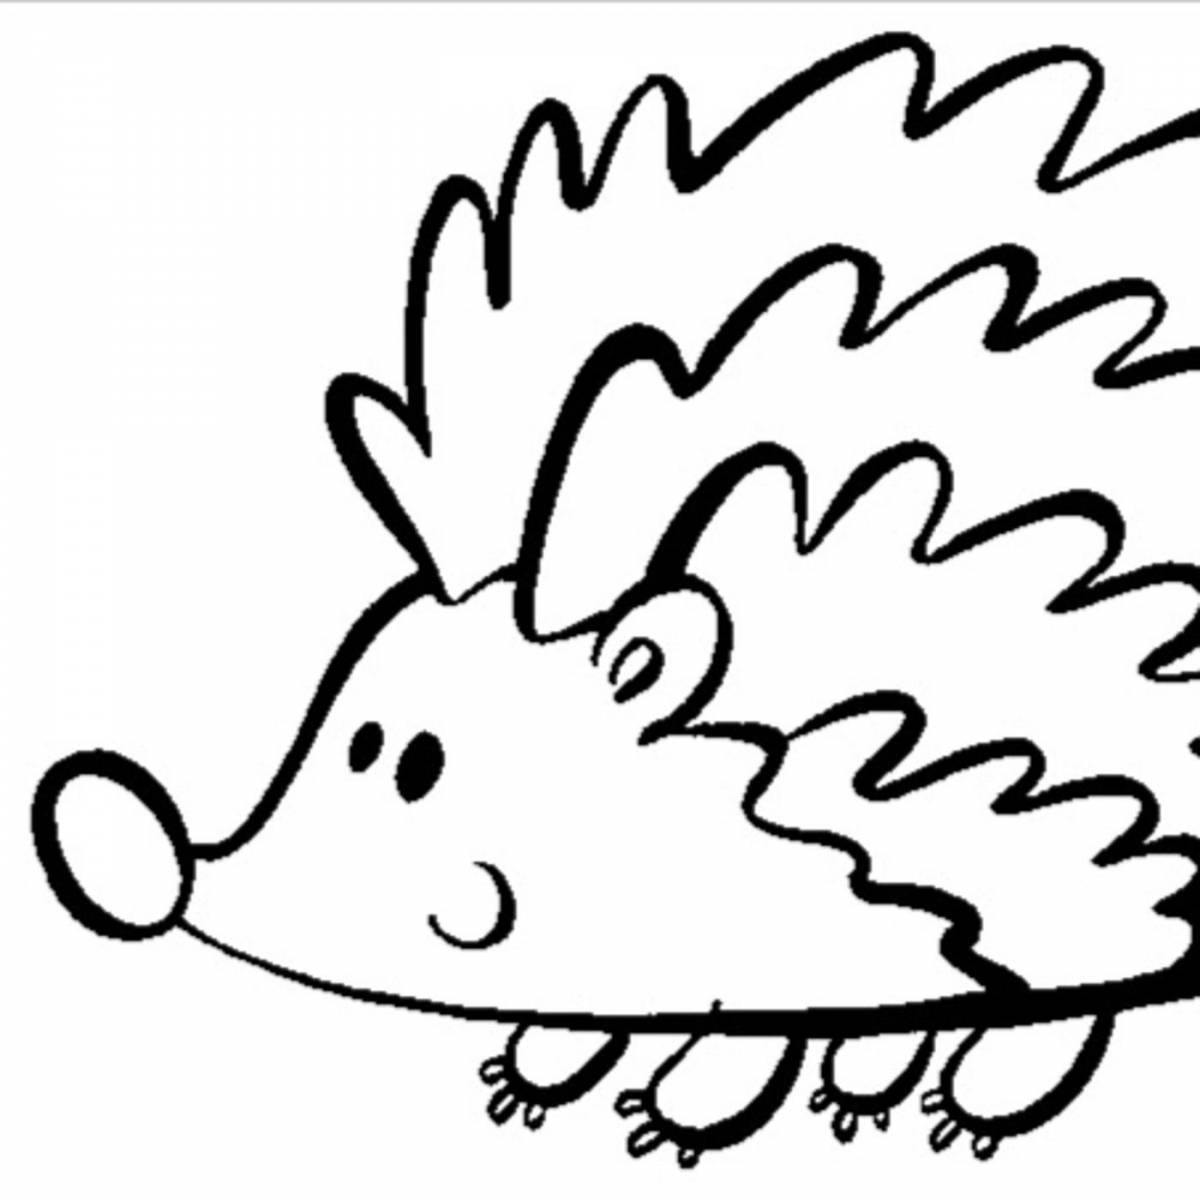 Radiant hedgehog coloring book for kids